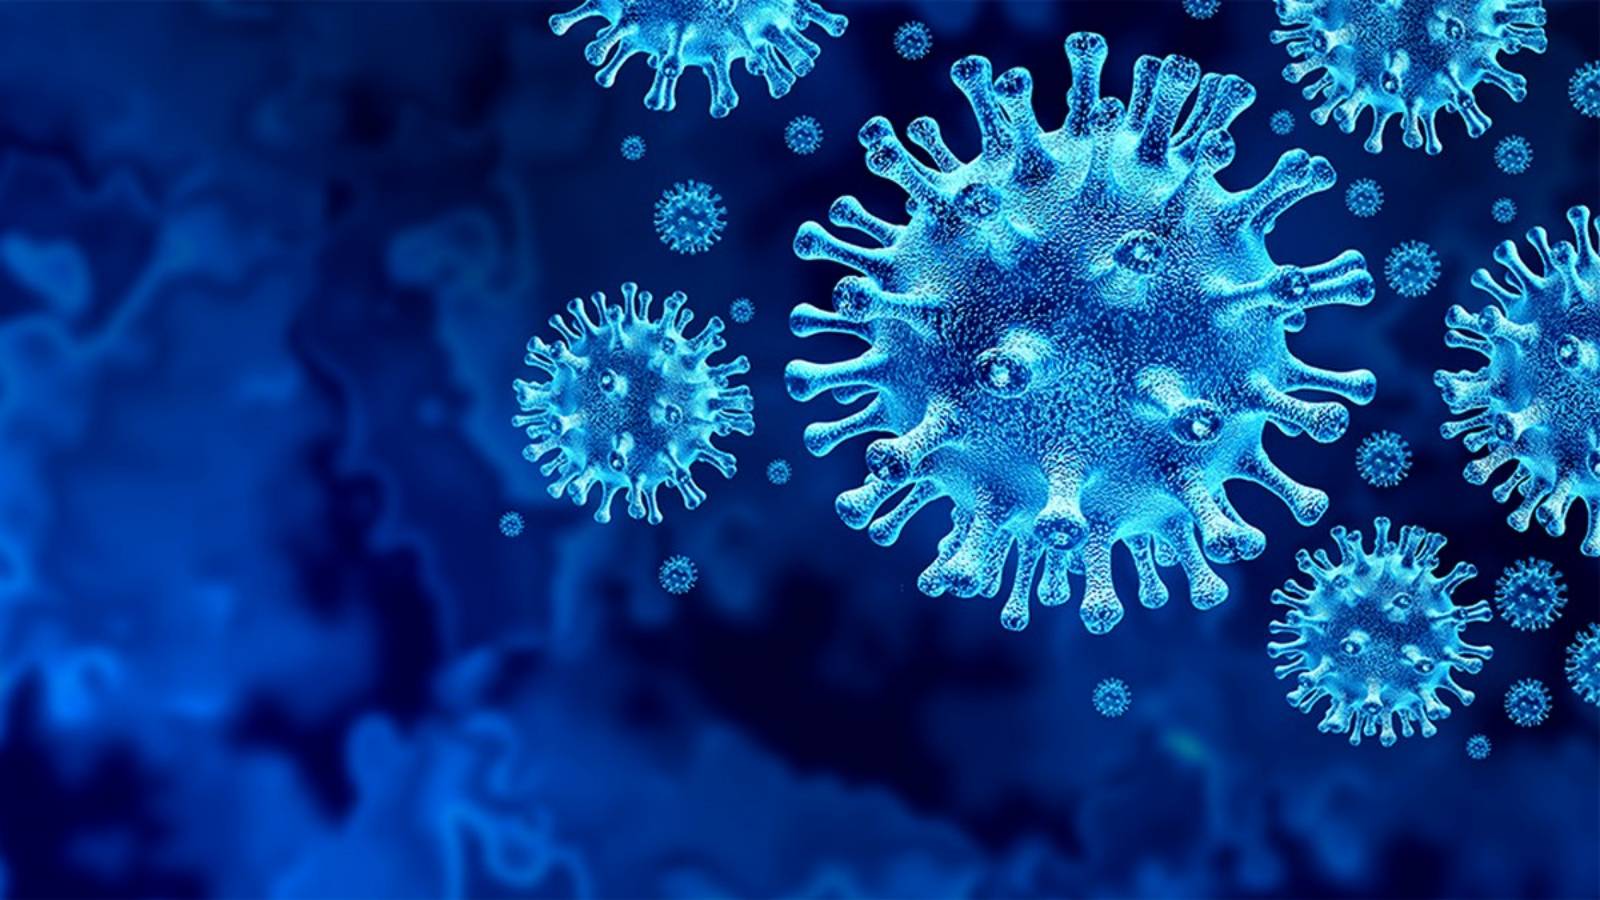 Ministerstwo Zdrowia utrata smaku i zapachu Cornavirus